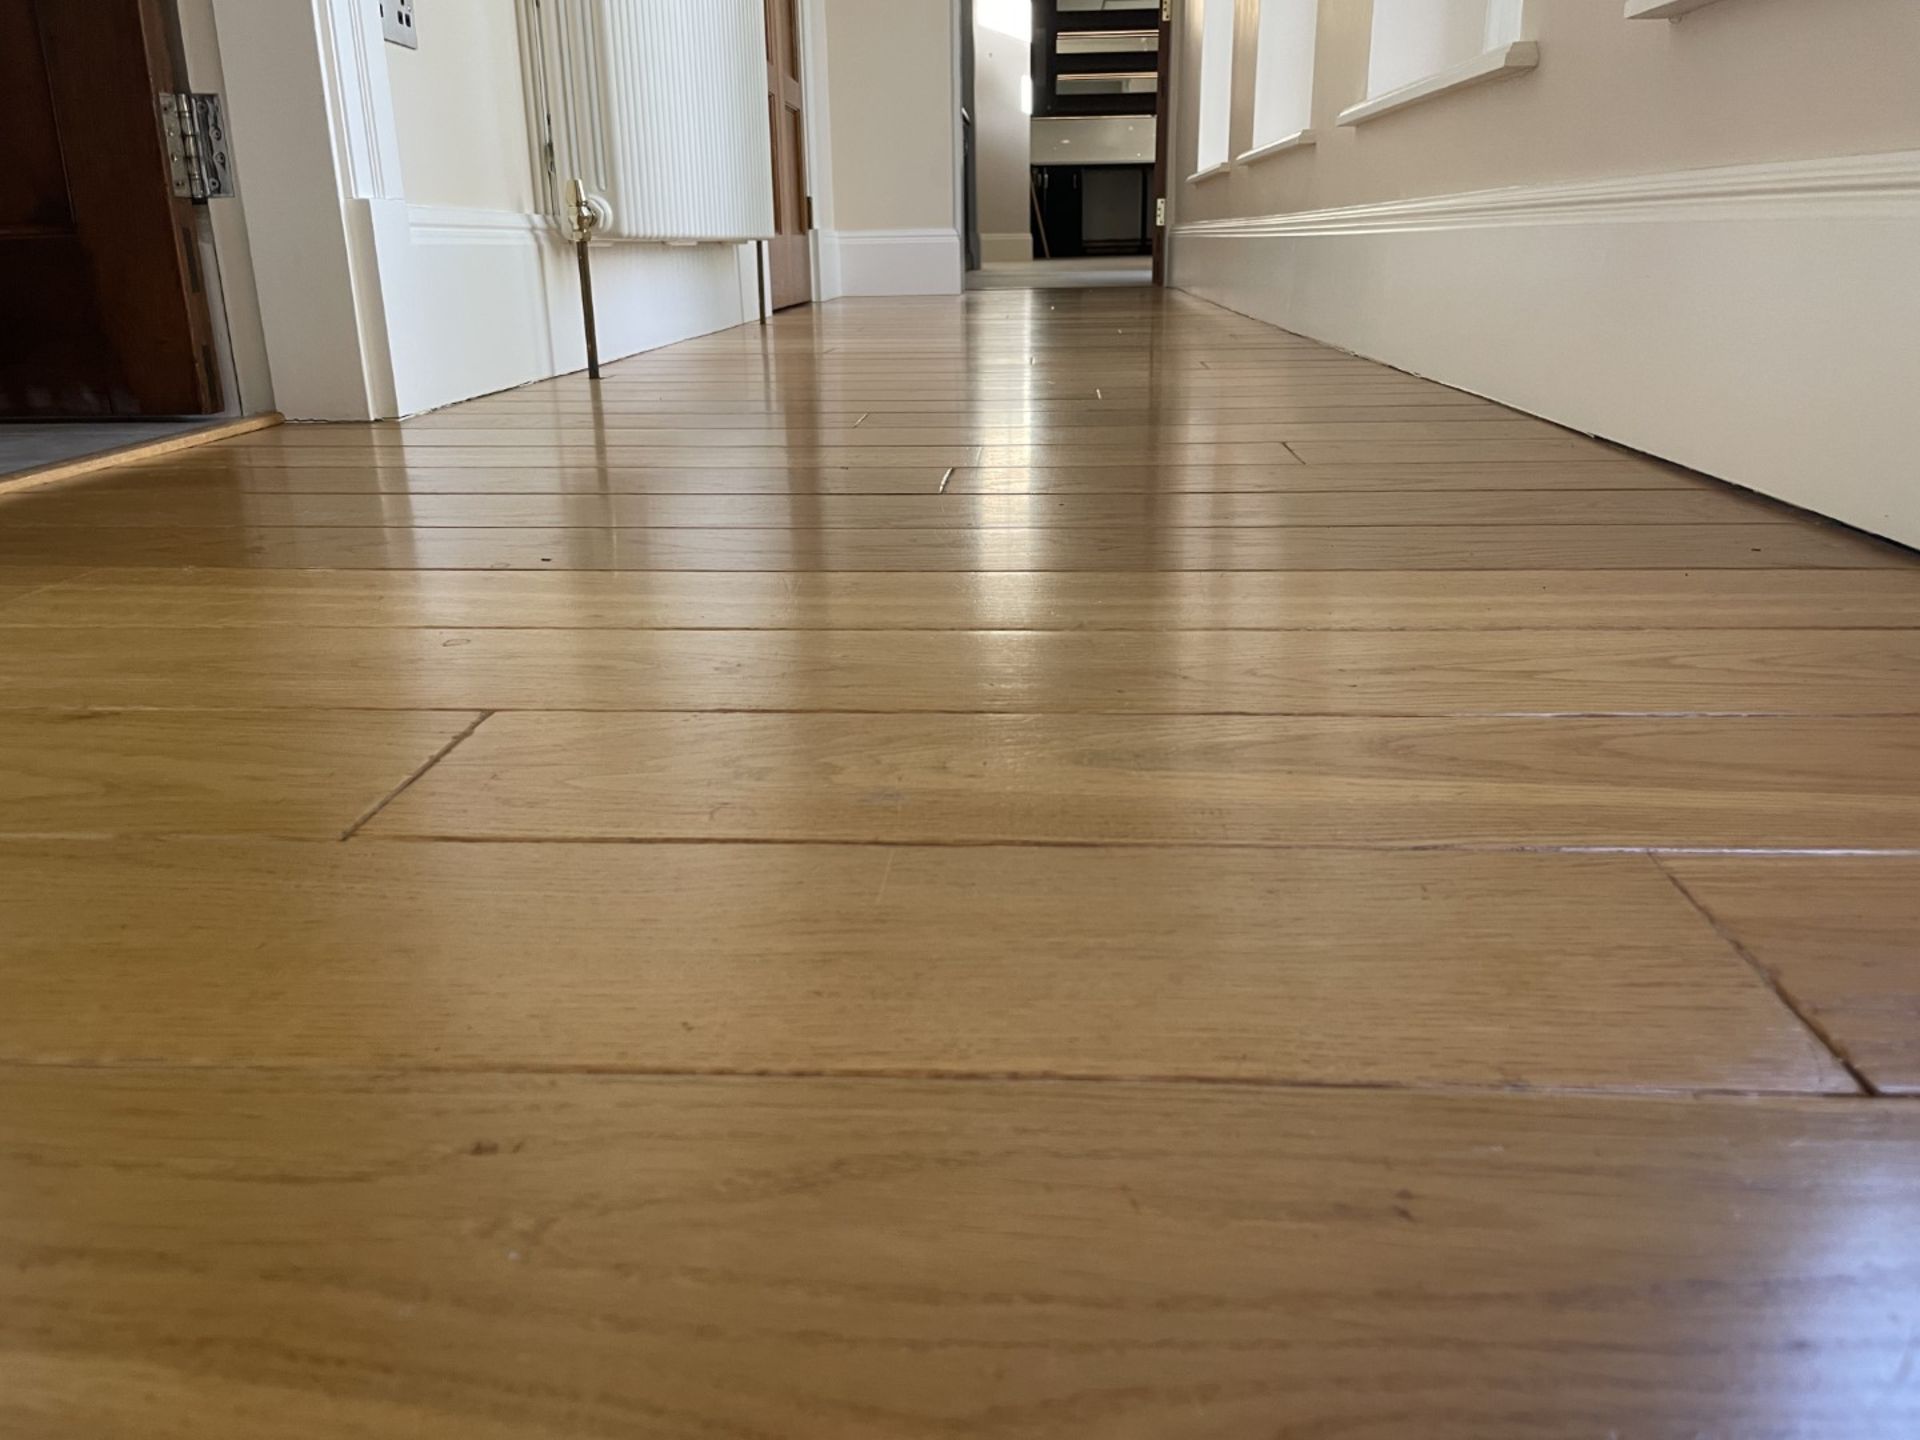 Fine Oak Hardwood Hallway Flooring - 6.3 x 1.2 Metres - Ref: PAN212 - CL896 - NO VAT - Image 3 of 12